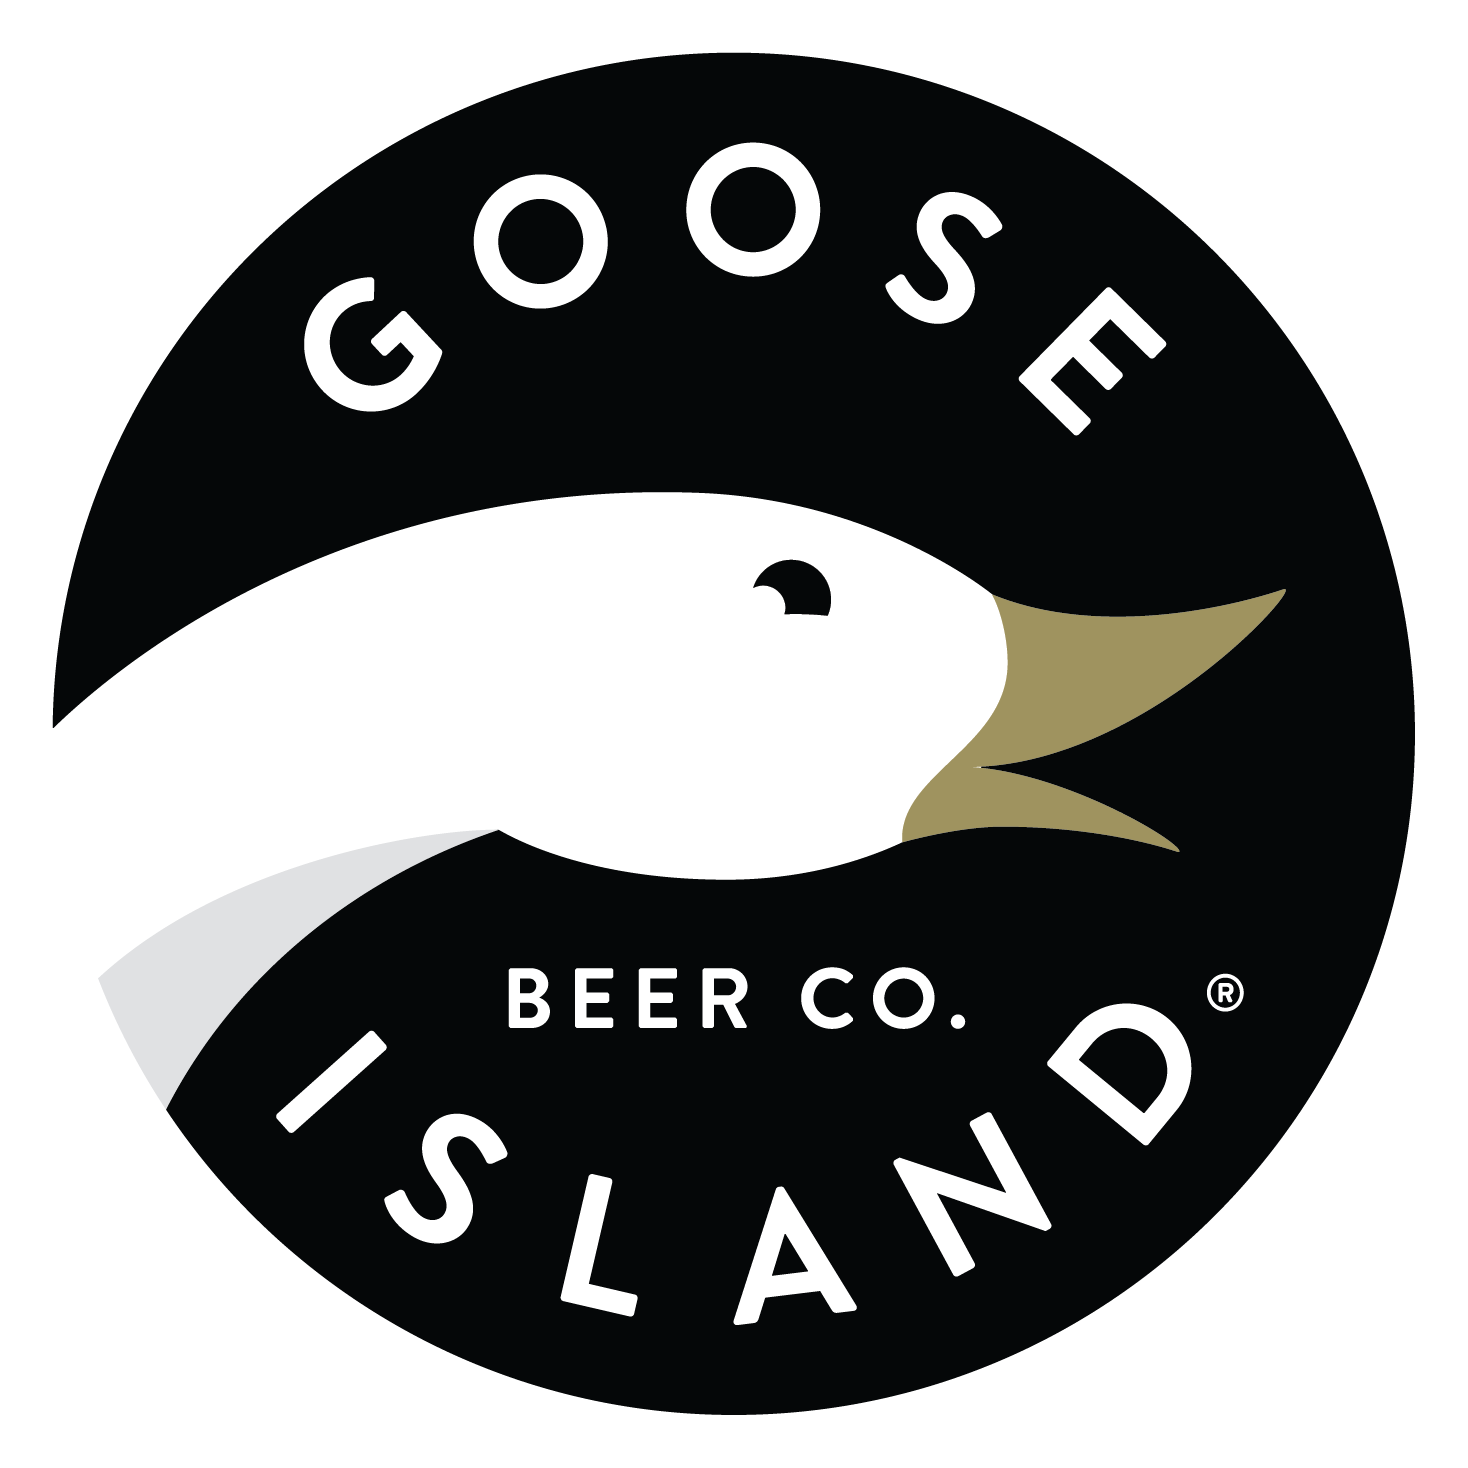 Goose_Island_Bug_Gold_Beak_Black